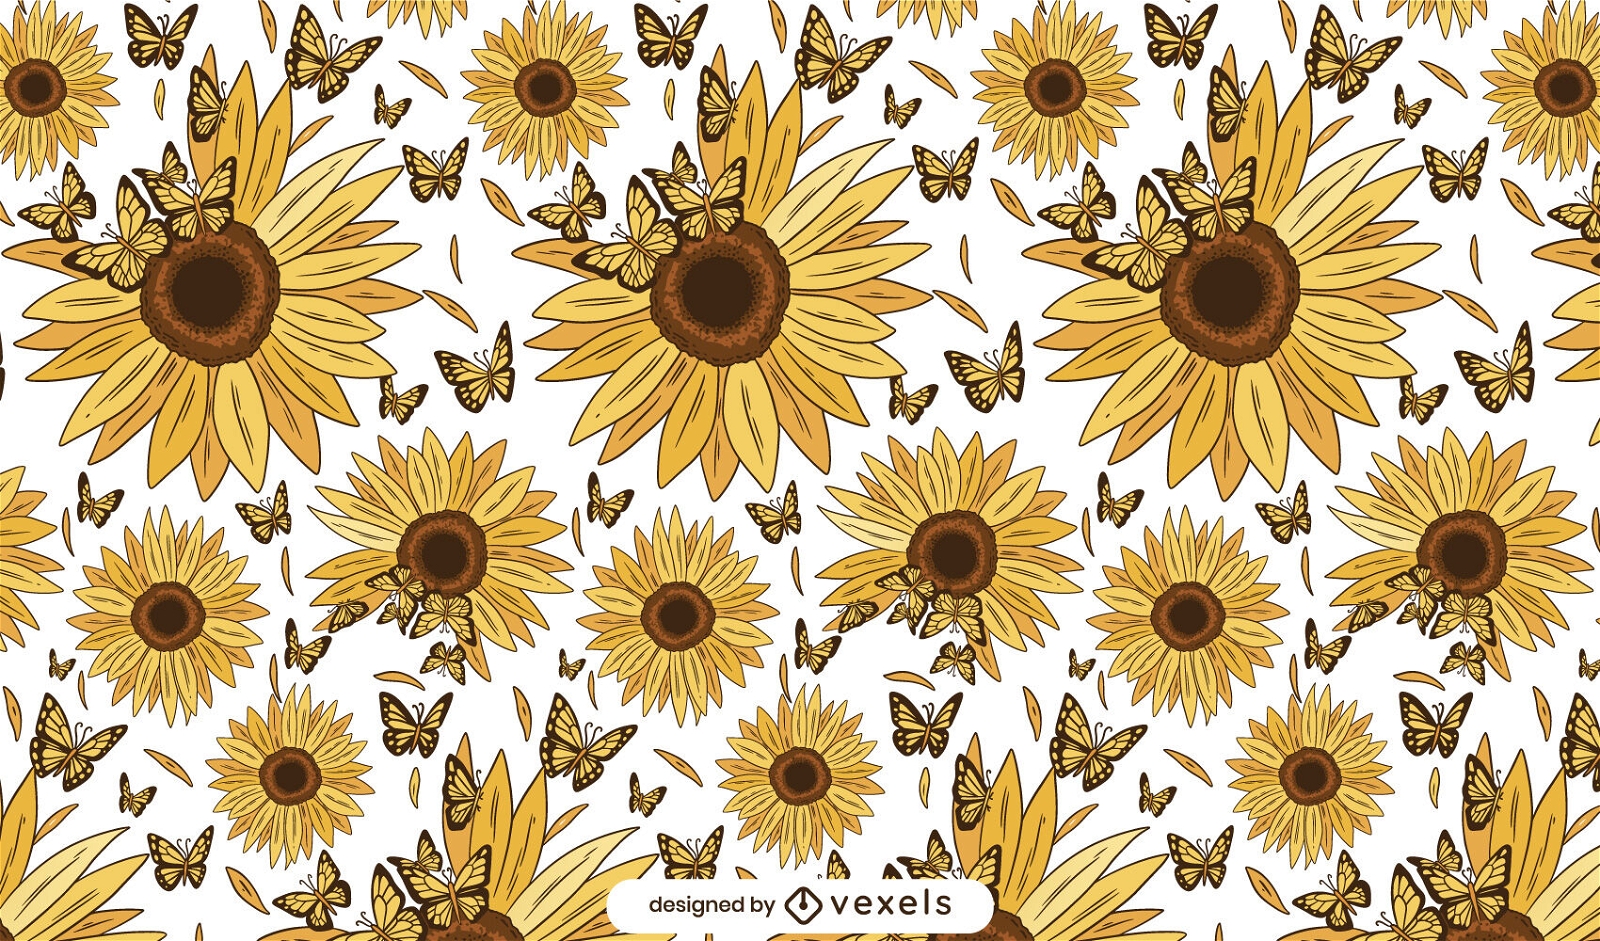 Sunflowers and butterflies pattern design